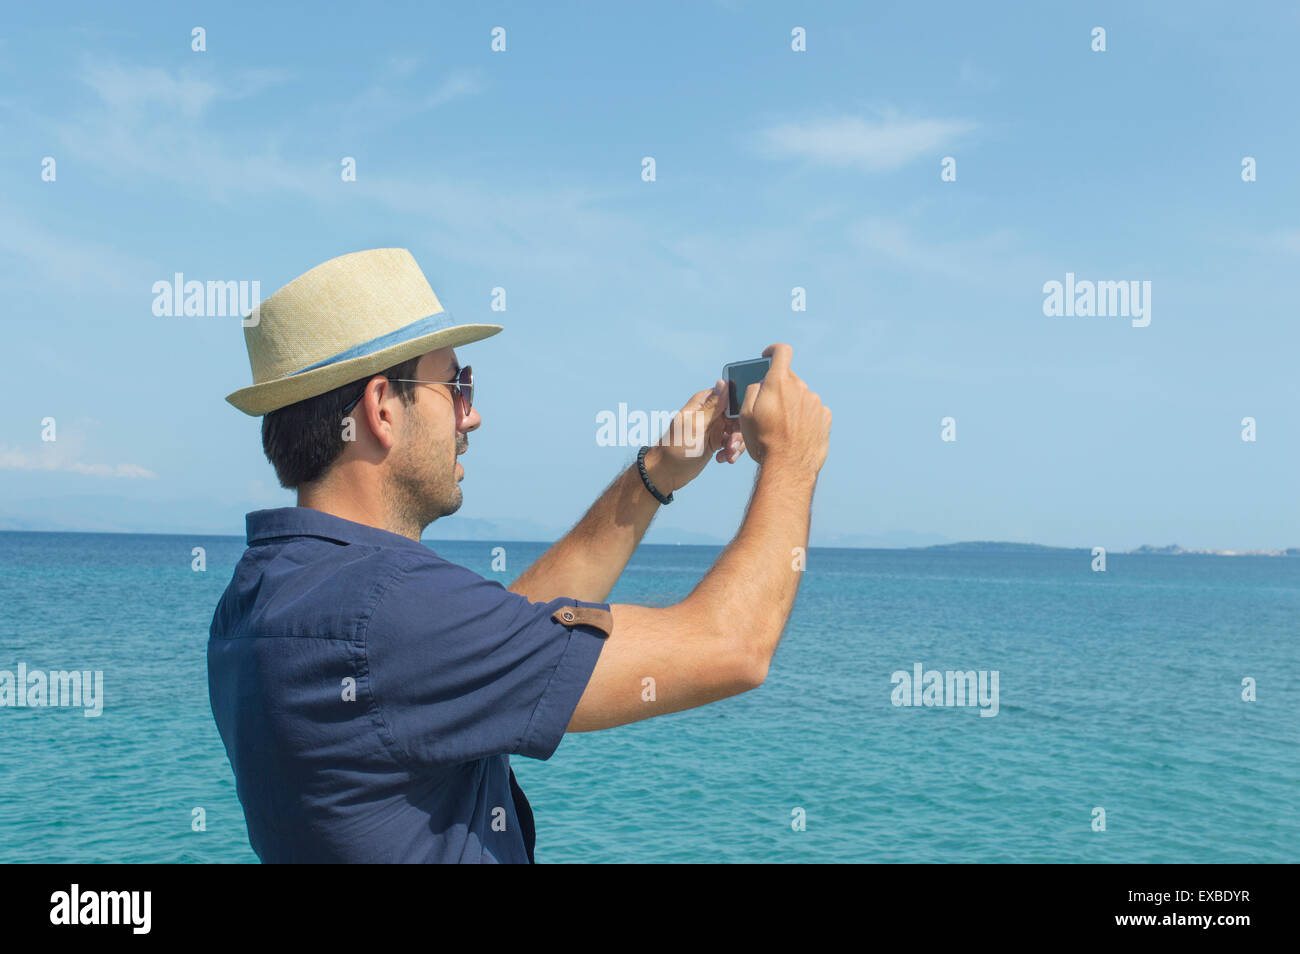 El hombre tomando fotos con su teléfono celular en el mar Foto de stock